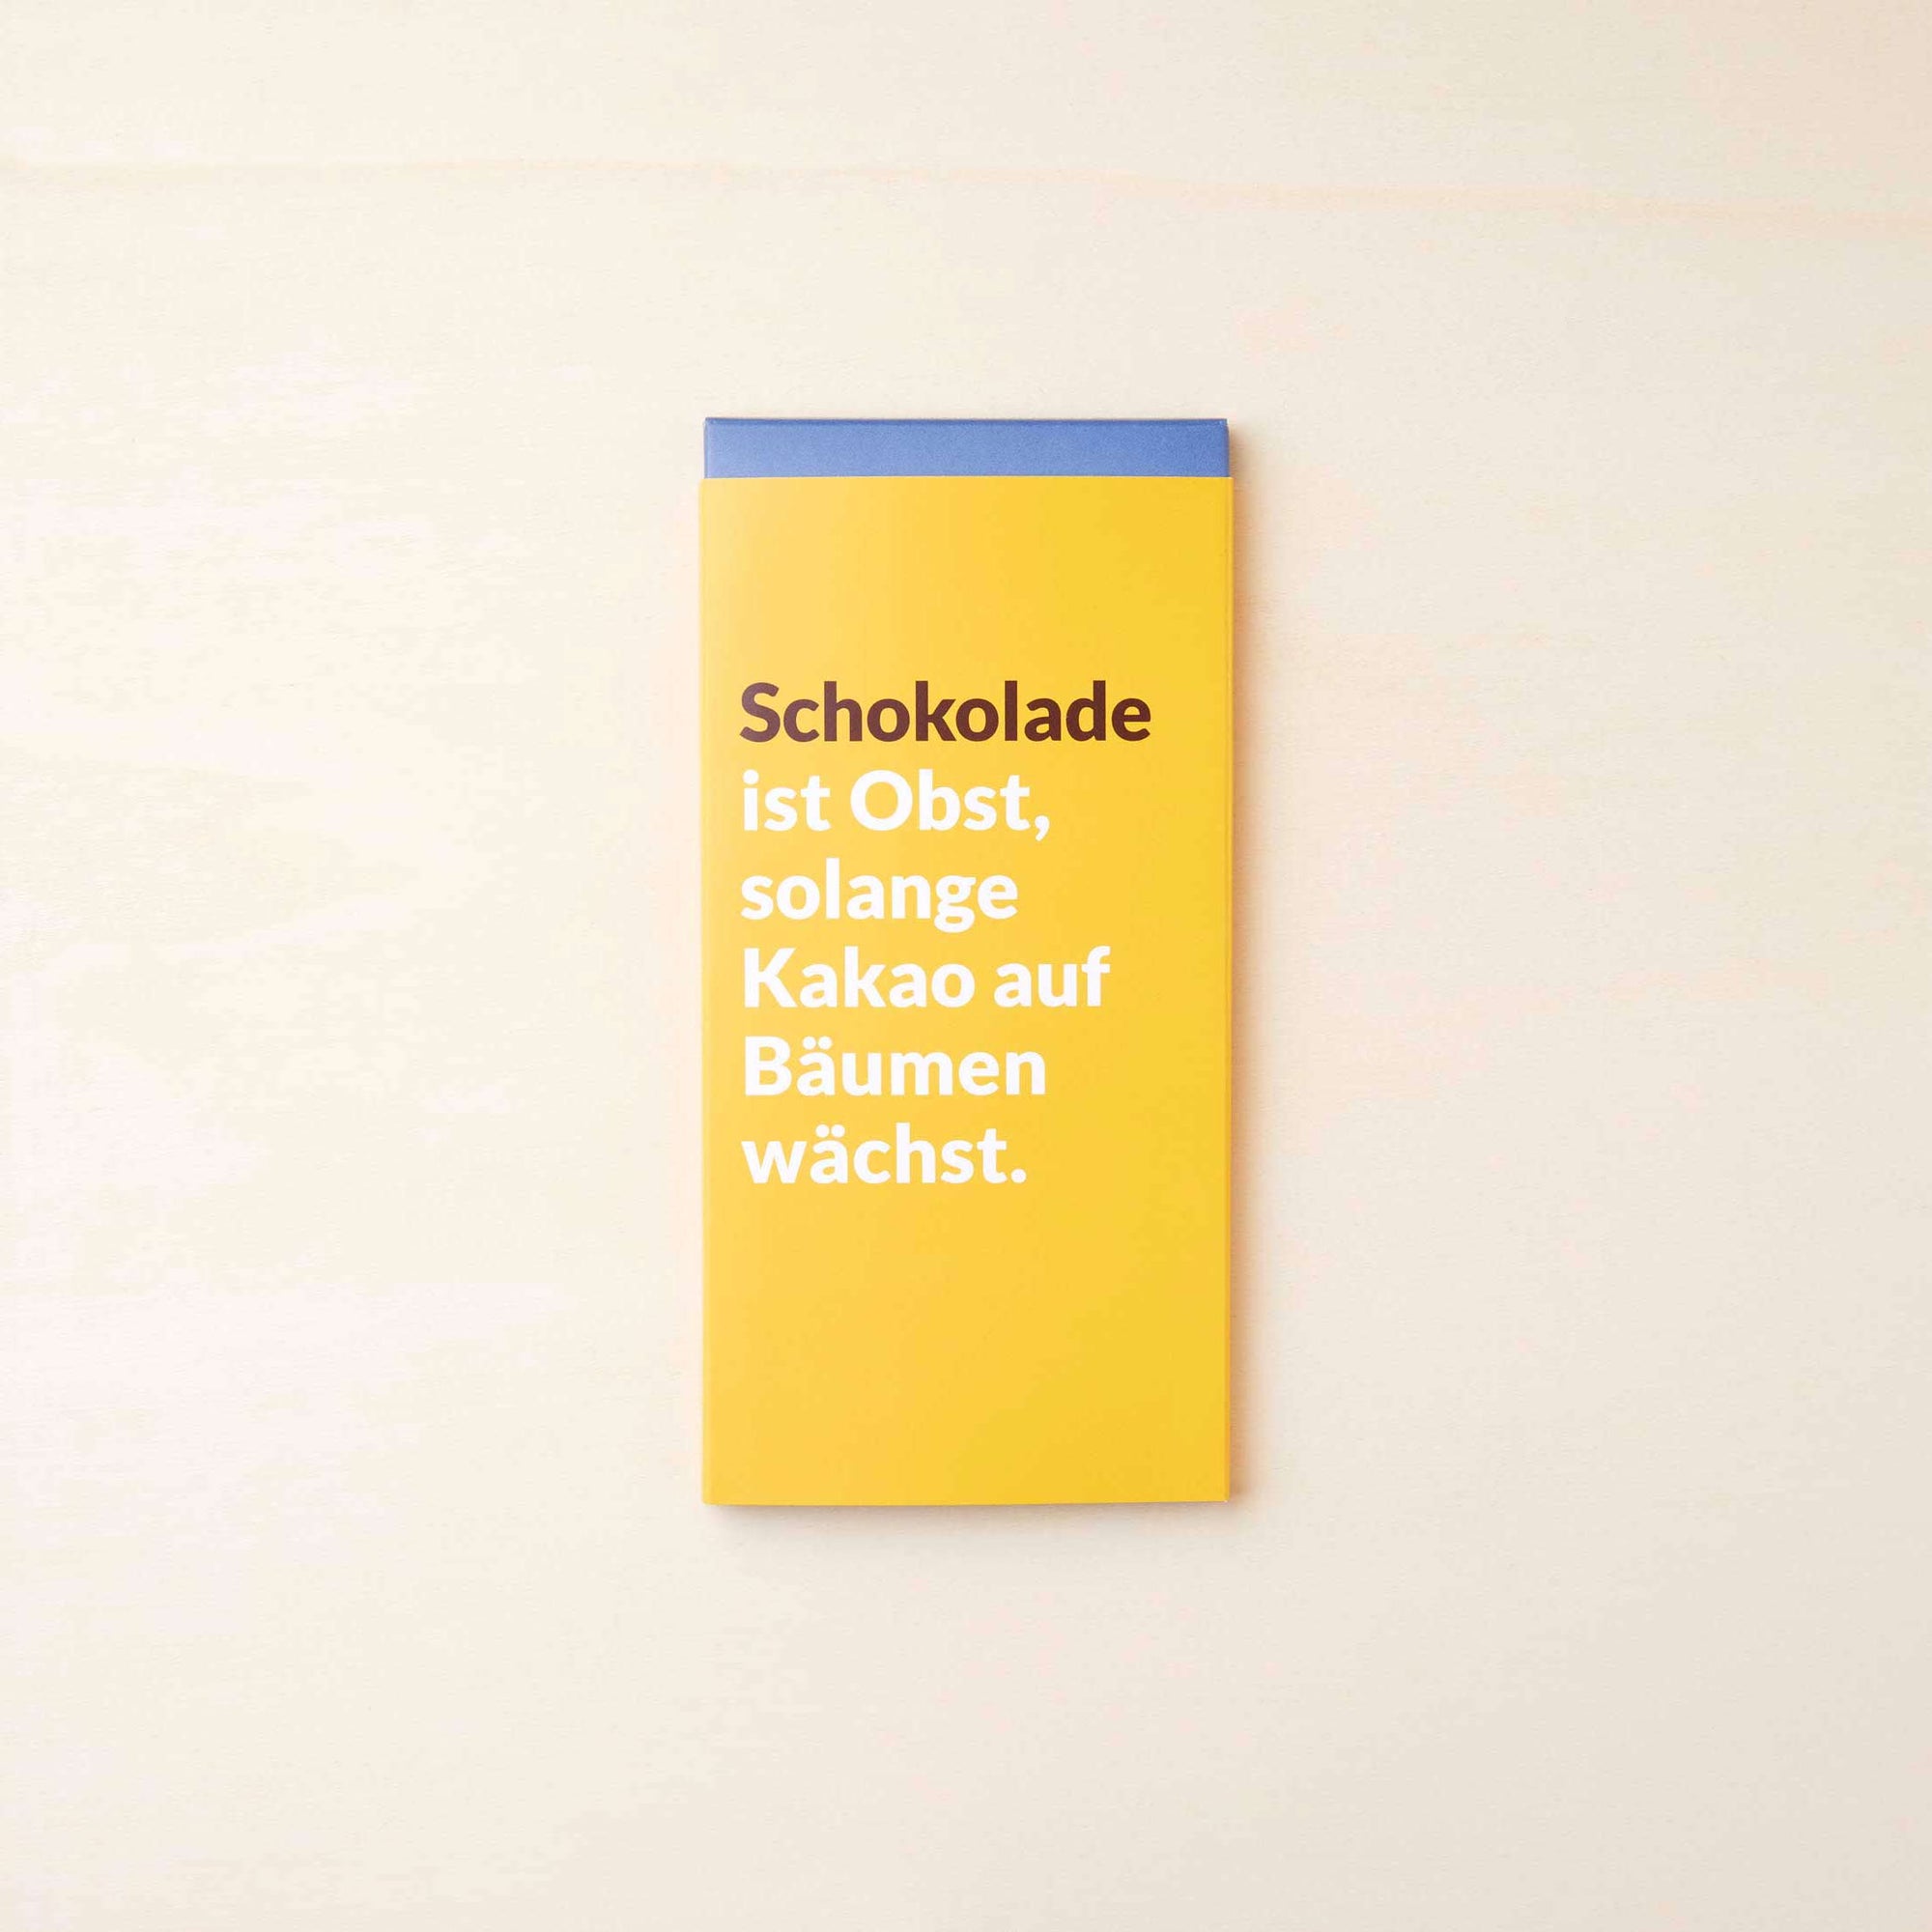 Extra cremige Vollmilchschokolade von Lindt in einer gelben Verpackung mit dem Spruch: "Schokolade ist Obst, solange Kakao auf Bäumen wächst".